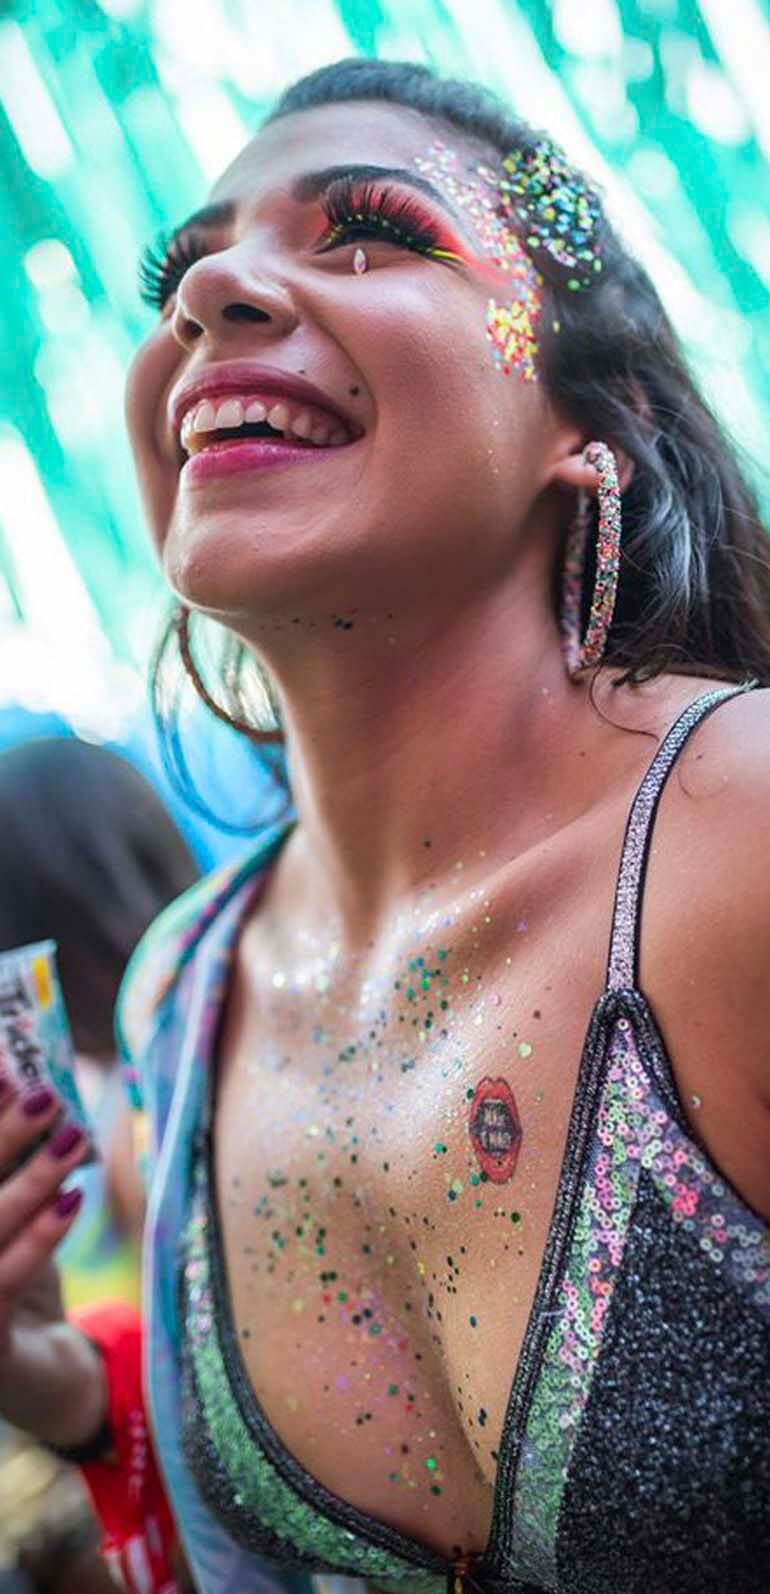 mulher sorridente ao participar de ativação da Trident no carnaval de São Paulo fazendo tatuagem instantânea em 3 segundos